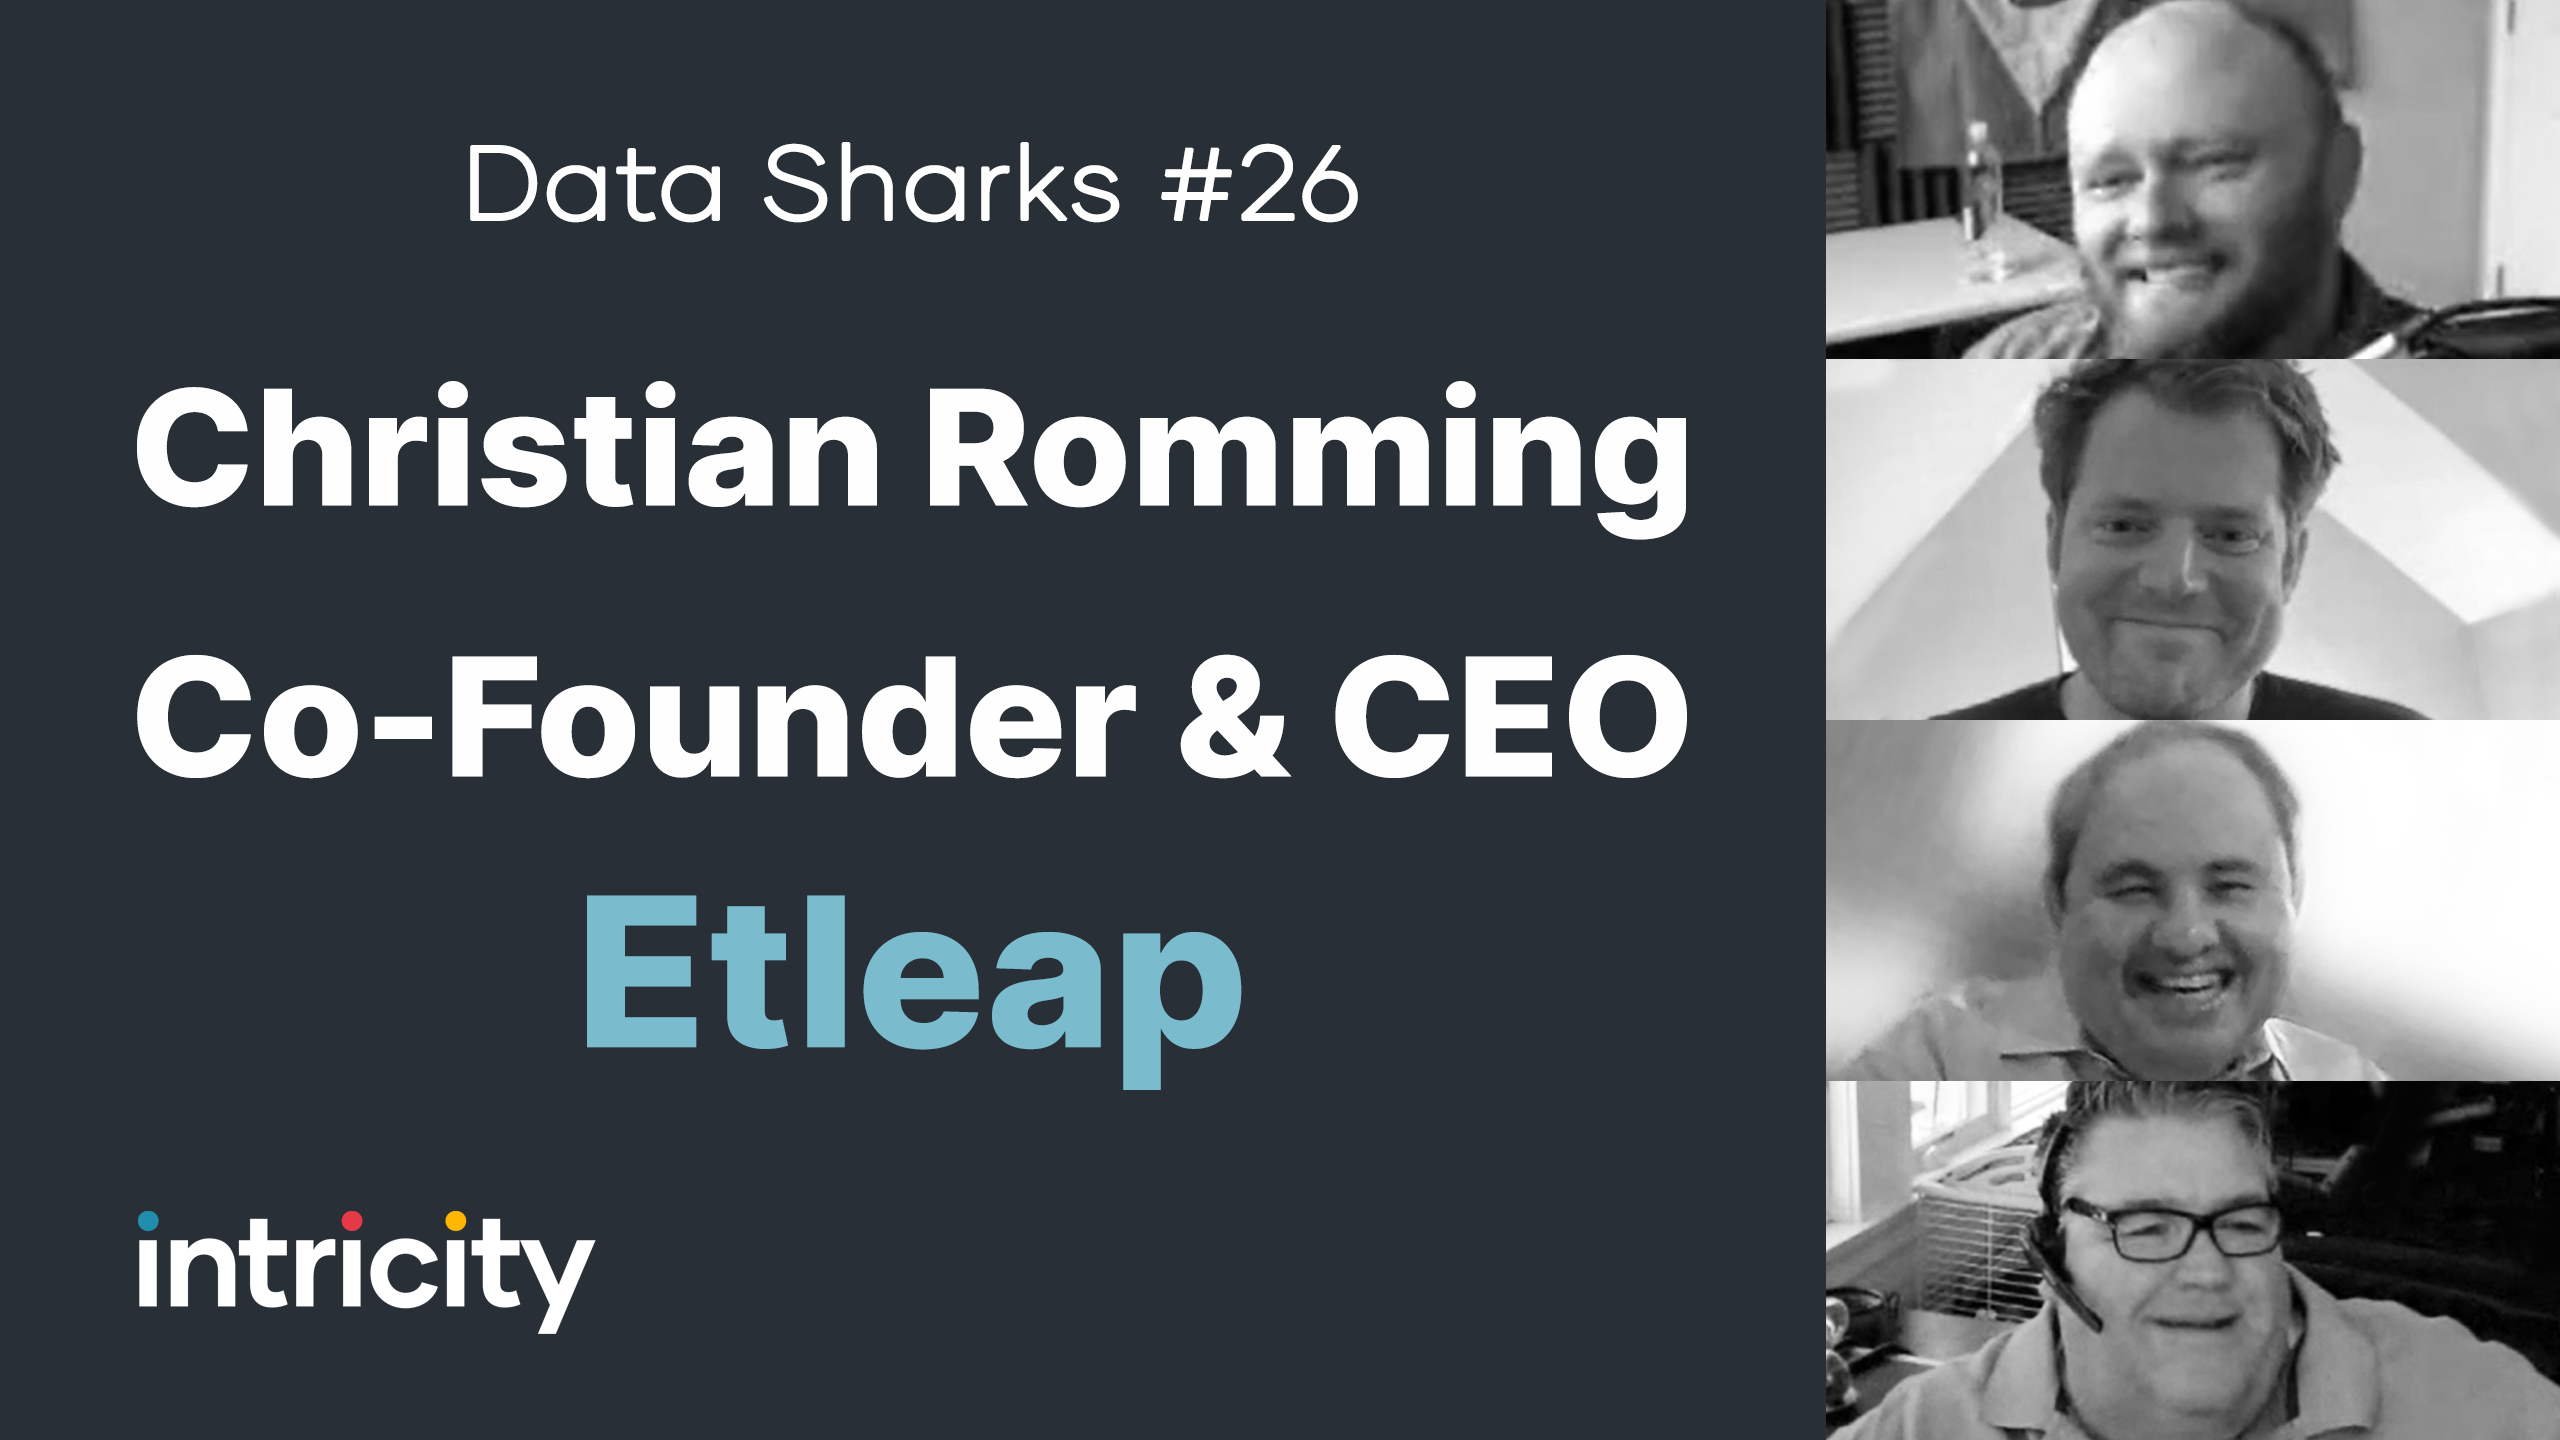 Data Sharks #26: Christian Romming with Etleap